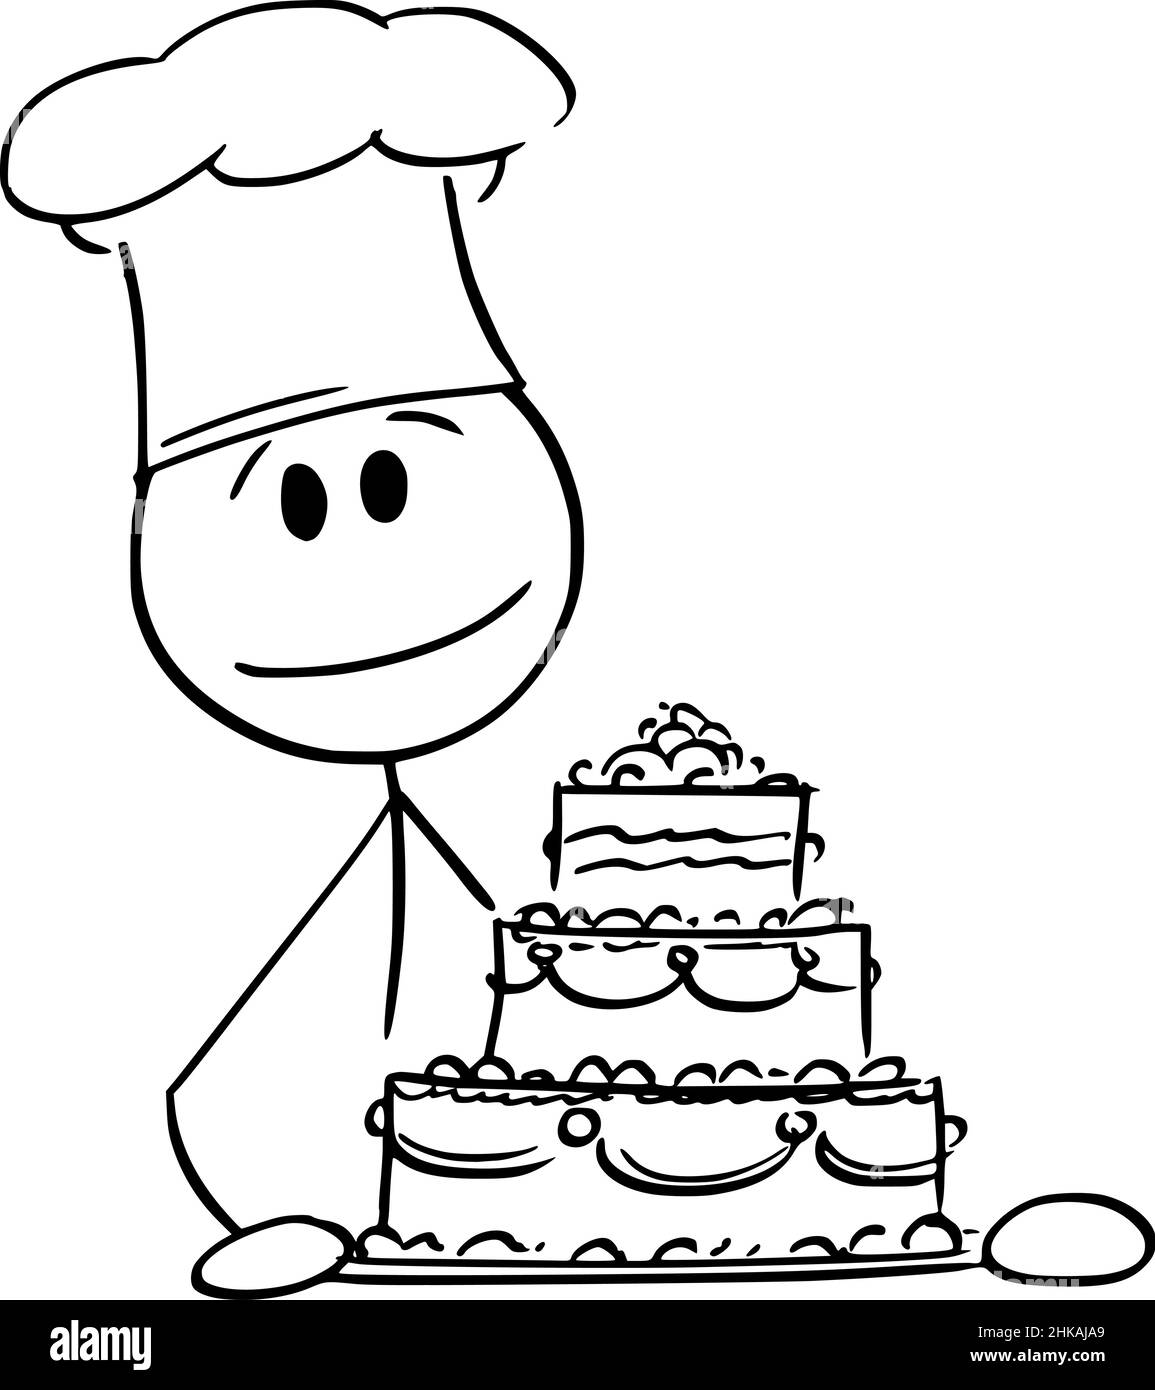 Cook Holding Geburtstag oder Hochzeitstorte, Vektor Cartoon Stick Abbildung Stock Vektor